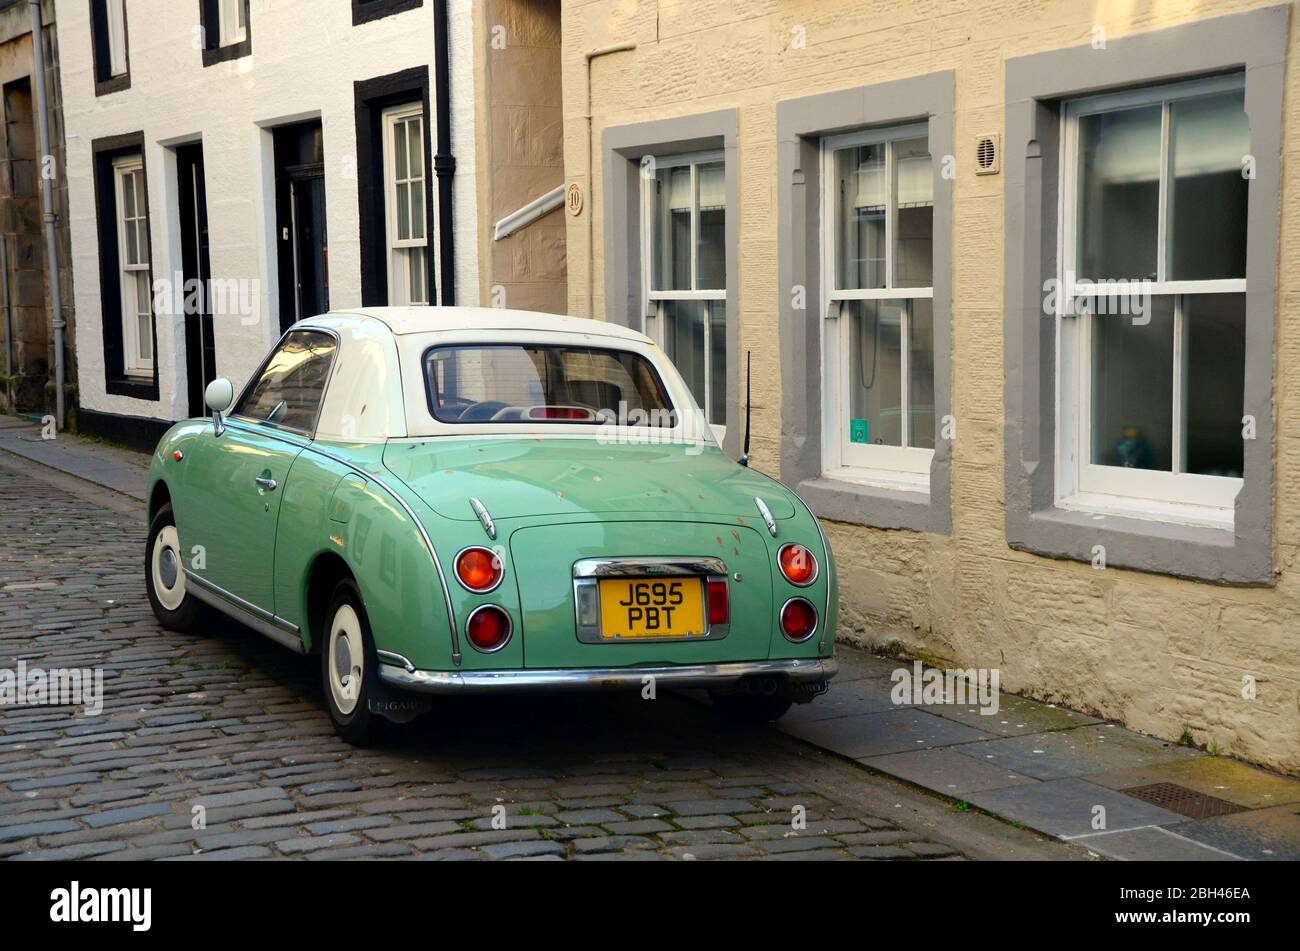 El coche de estilo retro de los años 60, el Nissan Figaro aparcado en una calle adoquinada en el casco antiguo de St andrews, Fifé, Escocia Foto de stock